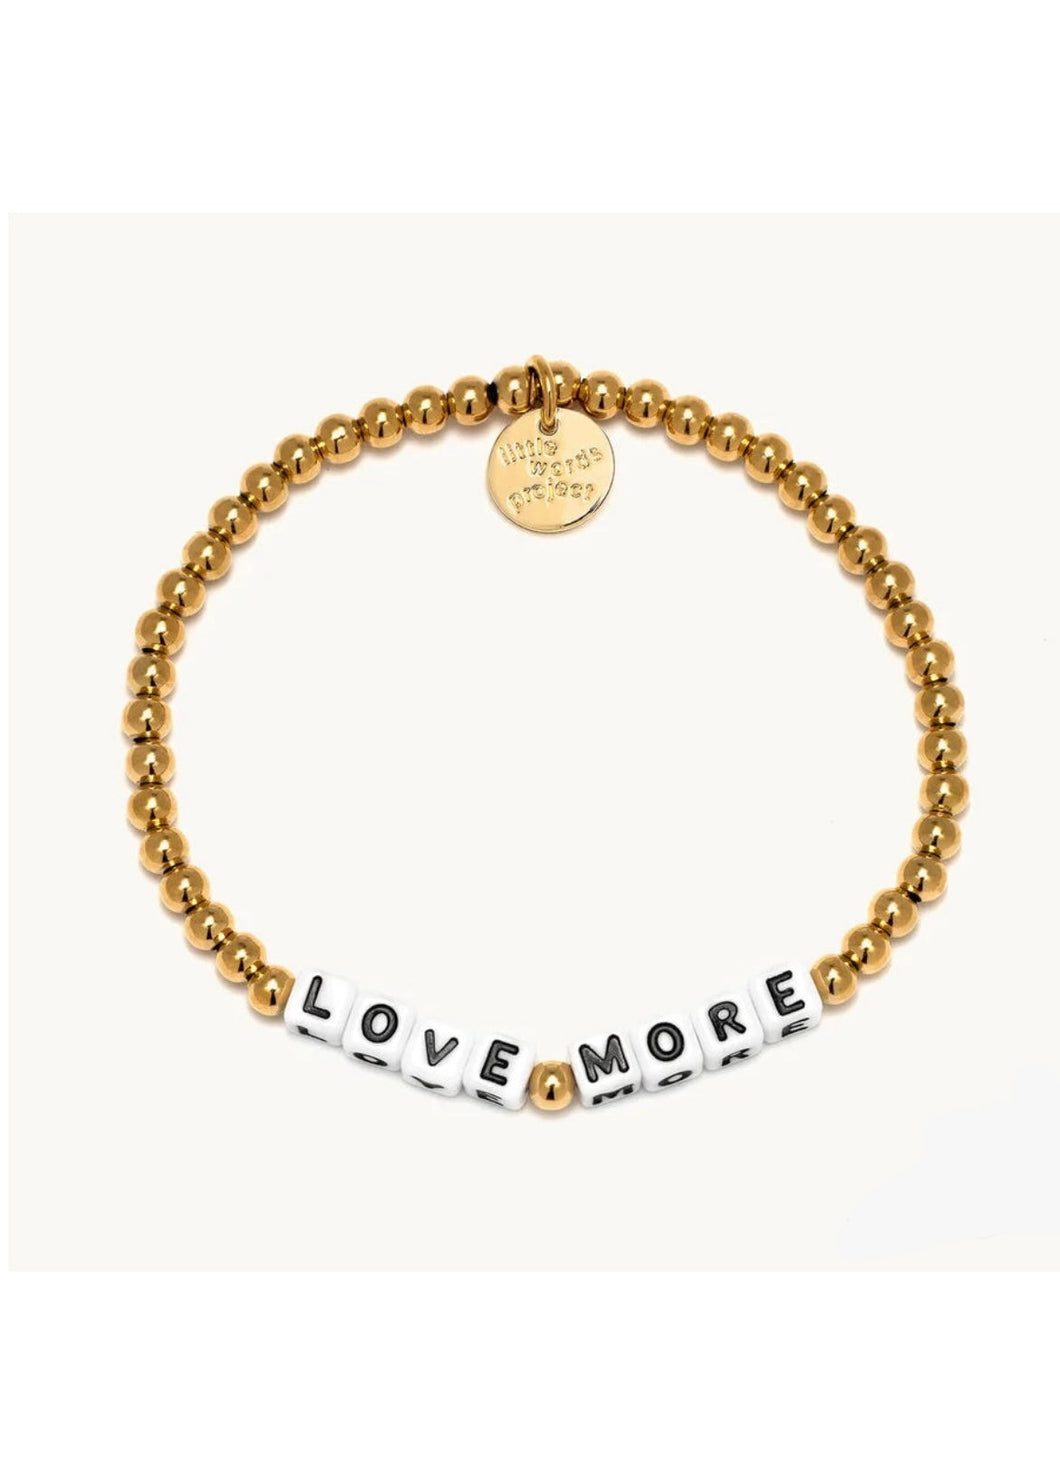 gold bead bracelet - love more